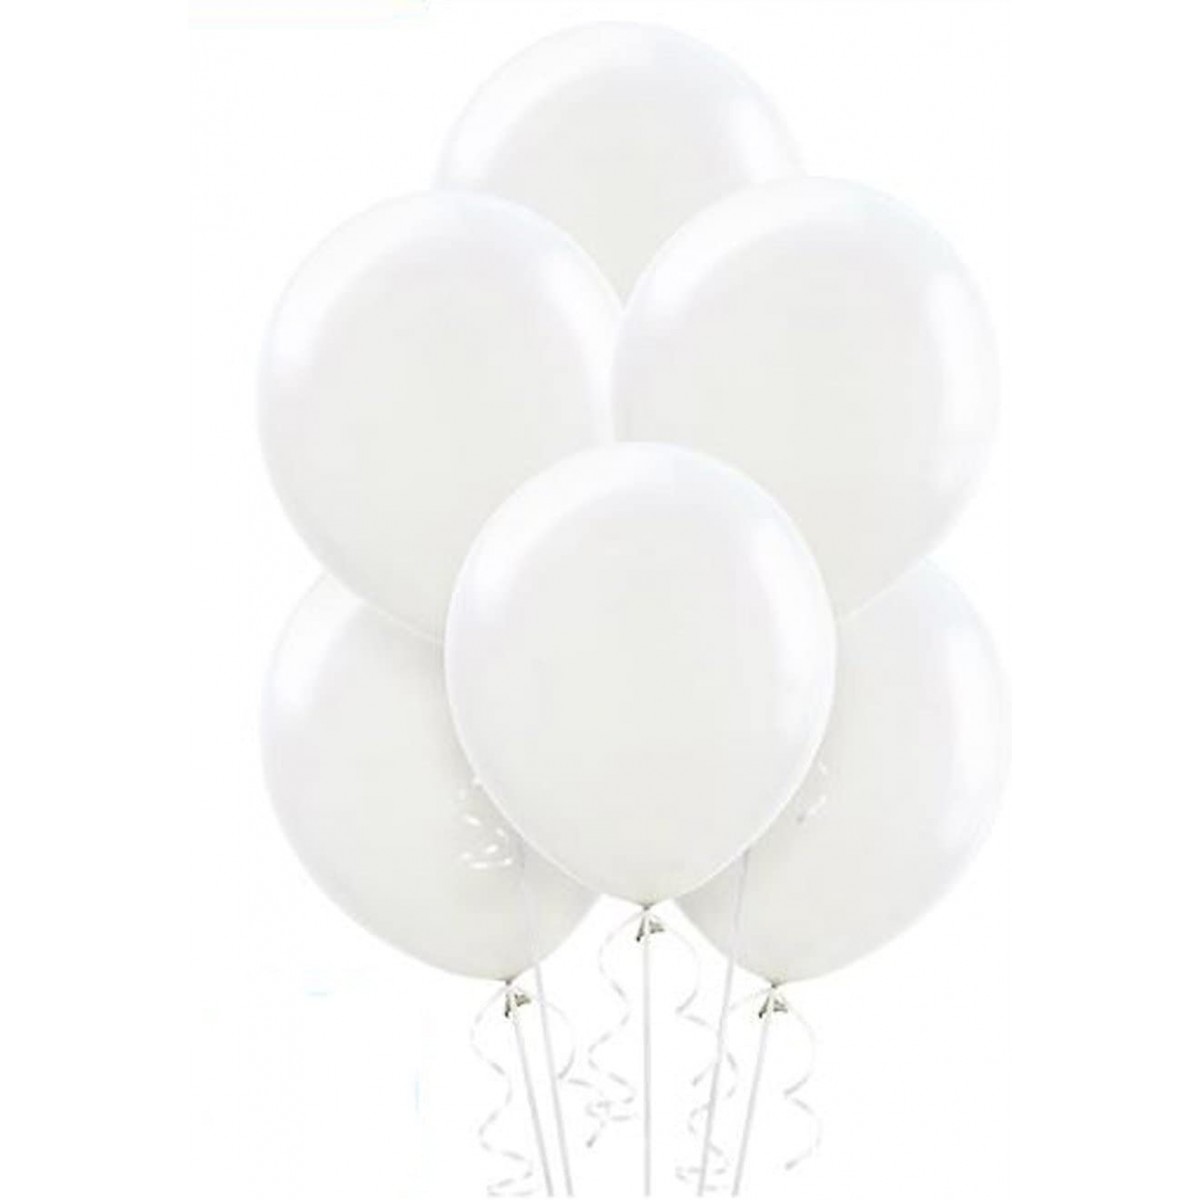 Set da 100 palloncini G90/11 bianchi, da 26 cm, per feste, in lattice